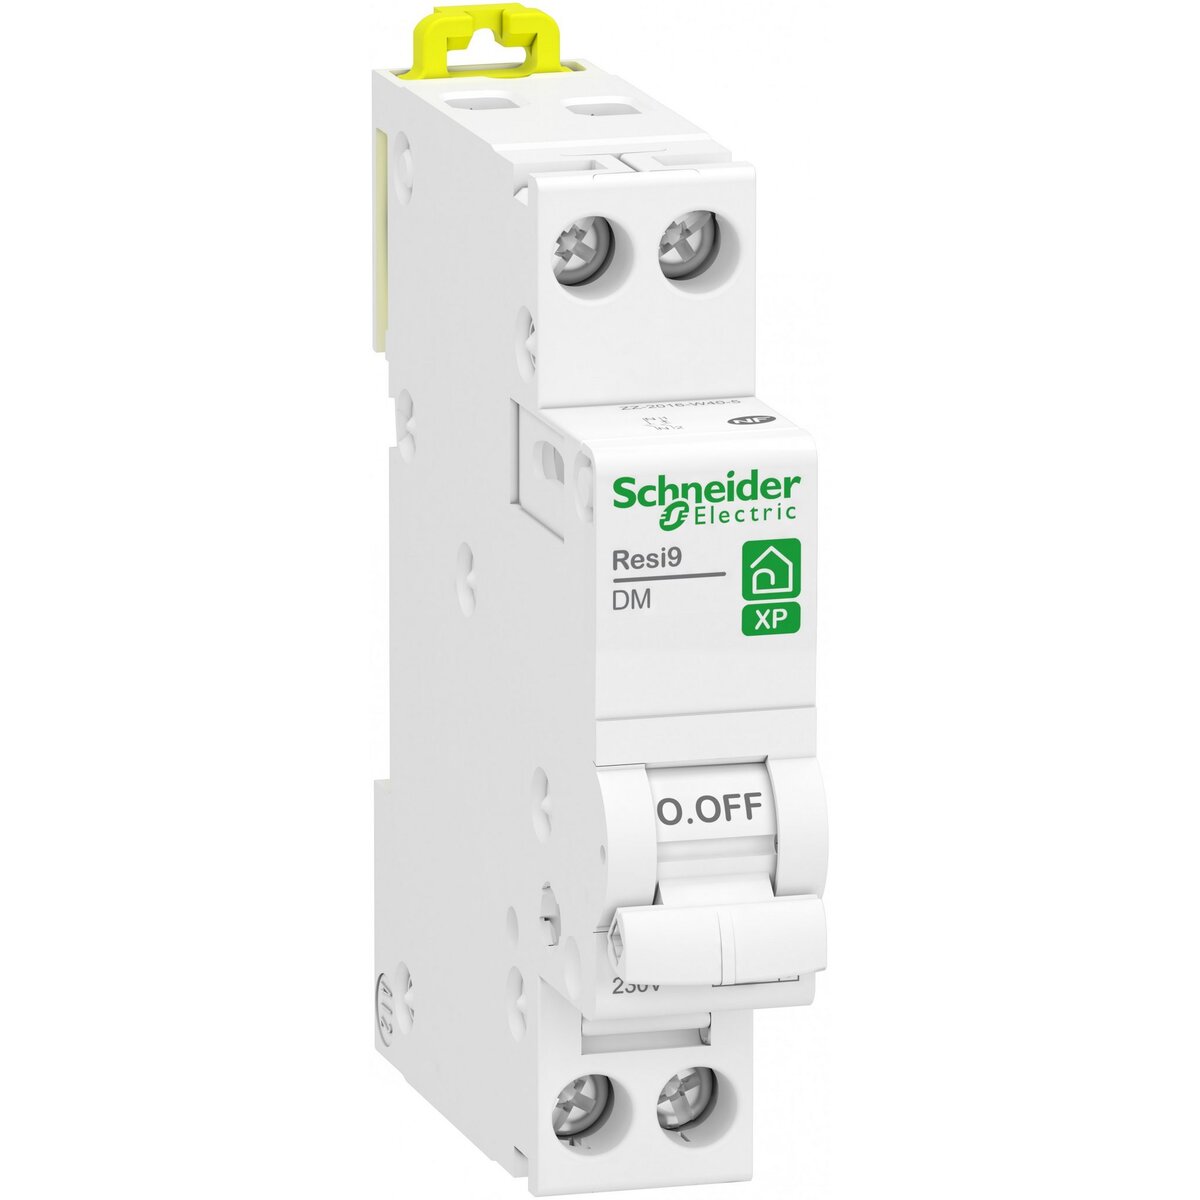 Schneider Electric Disjoncteur phase + neutre Resi9 SCHNEIDER ELECTRIC 10 A